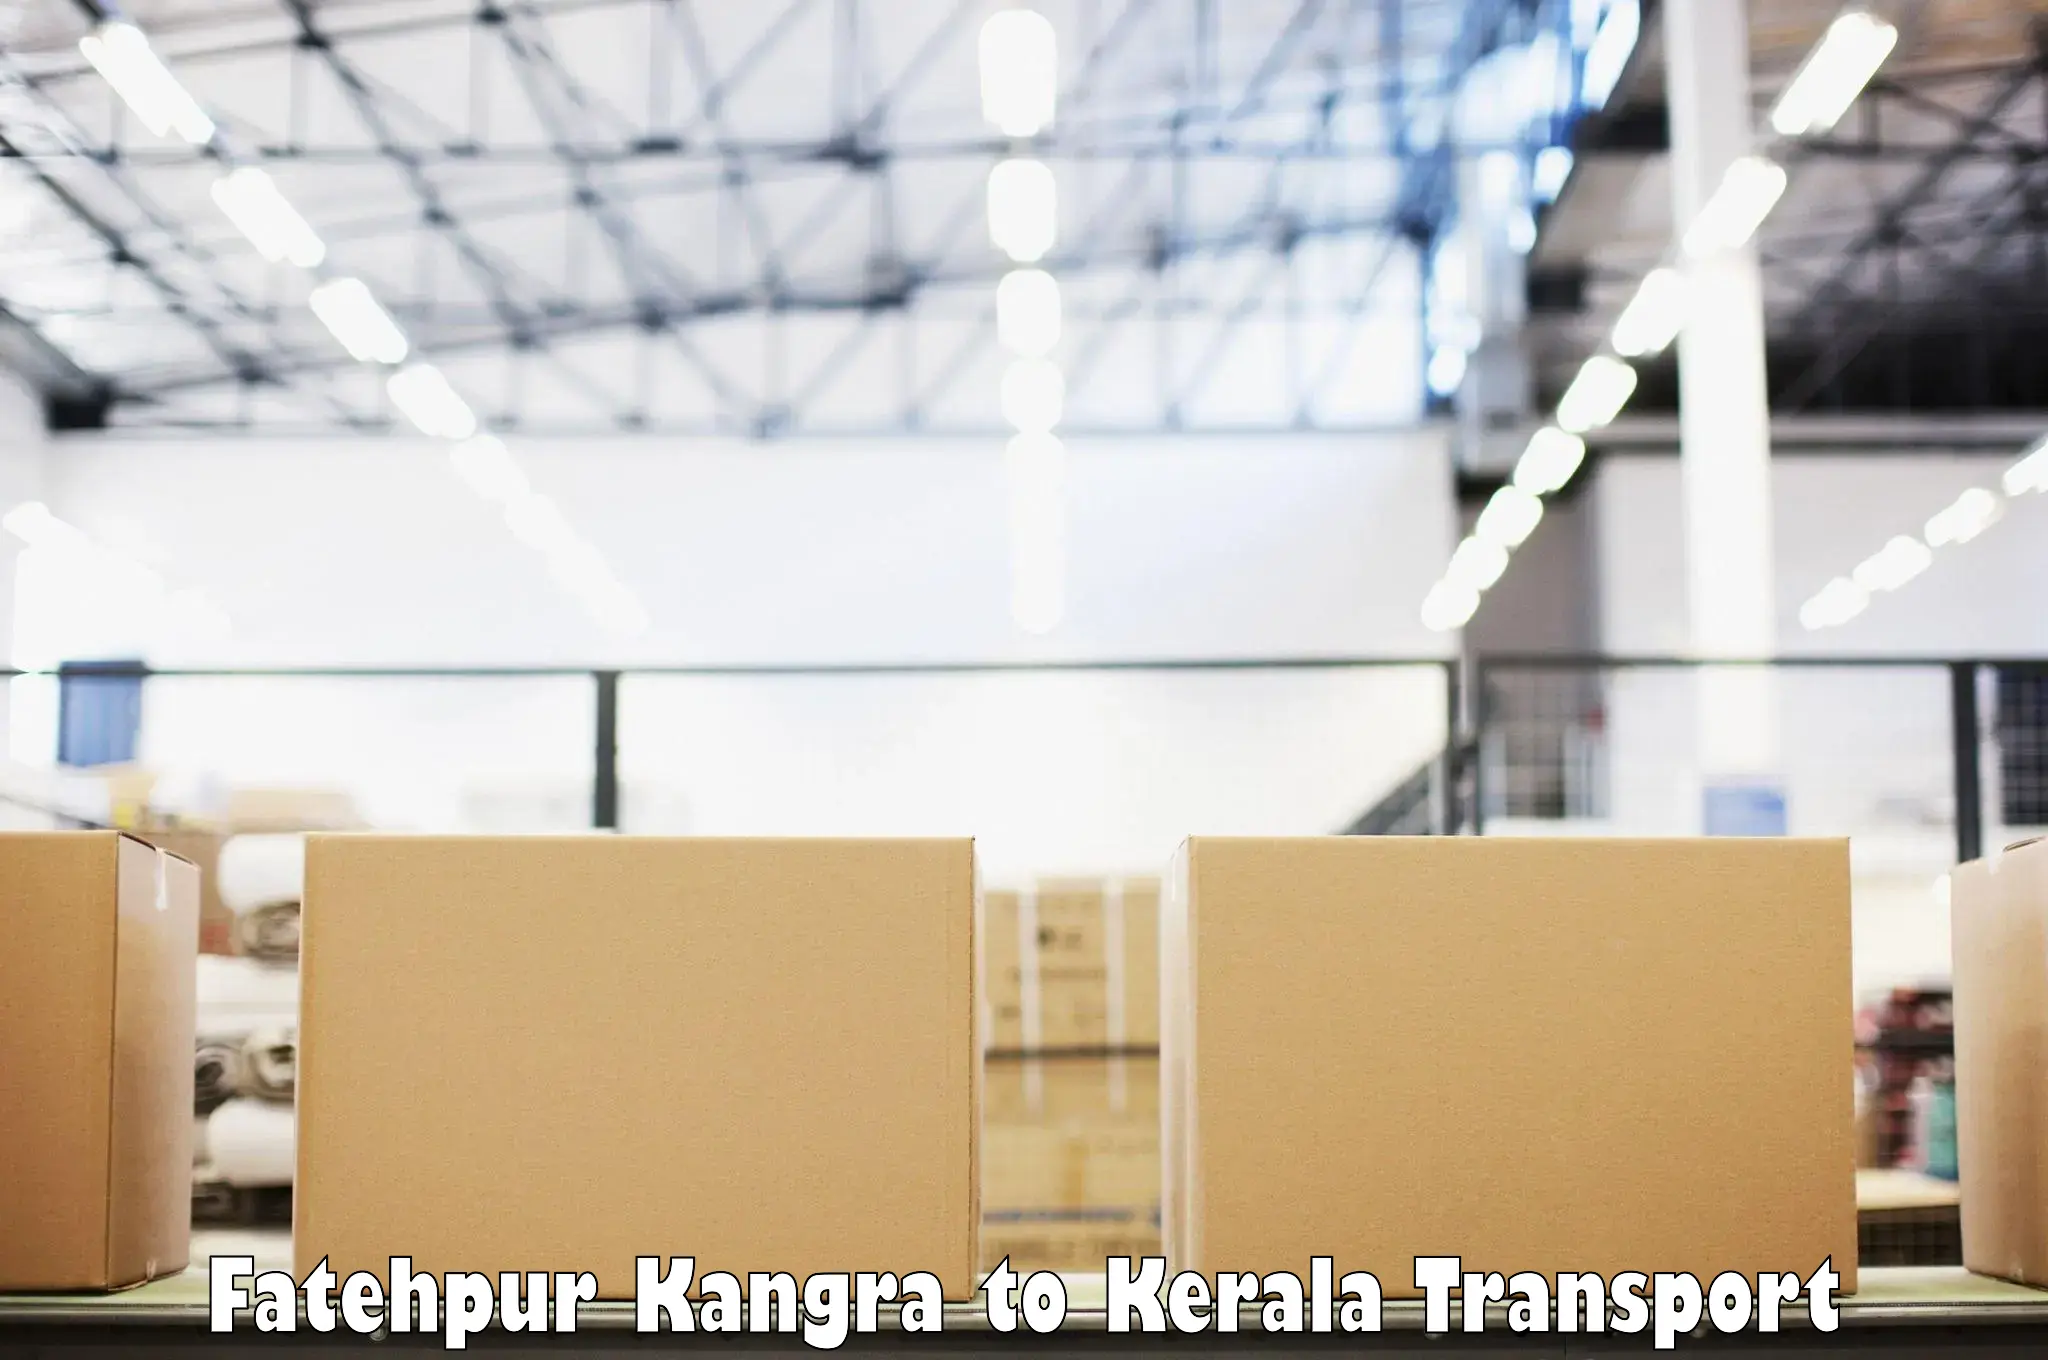 Air freight transport services Fatehpur Kangra to Kalpetta